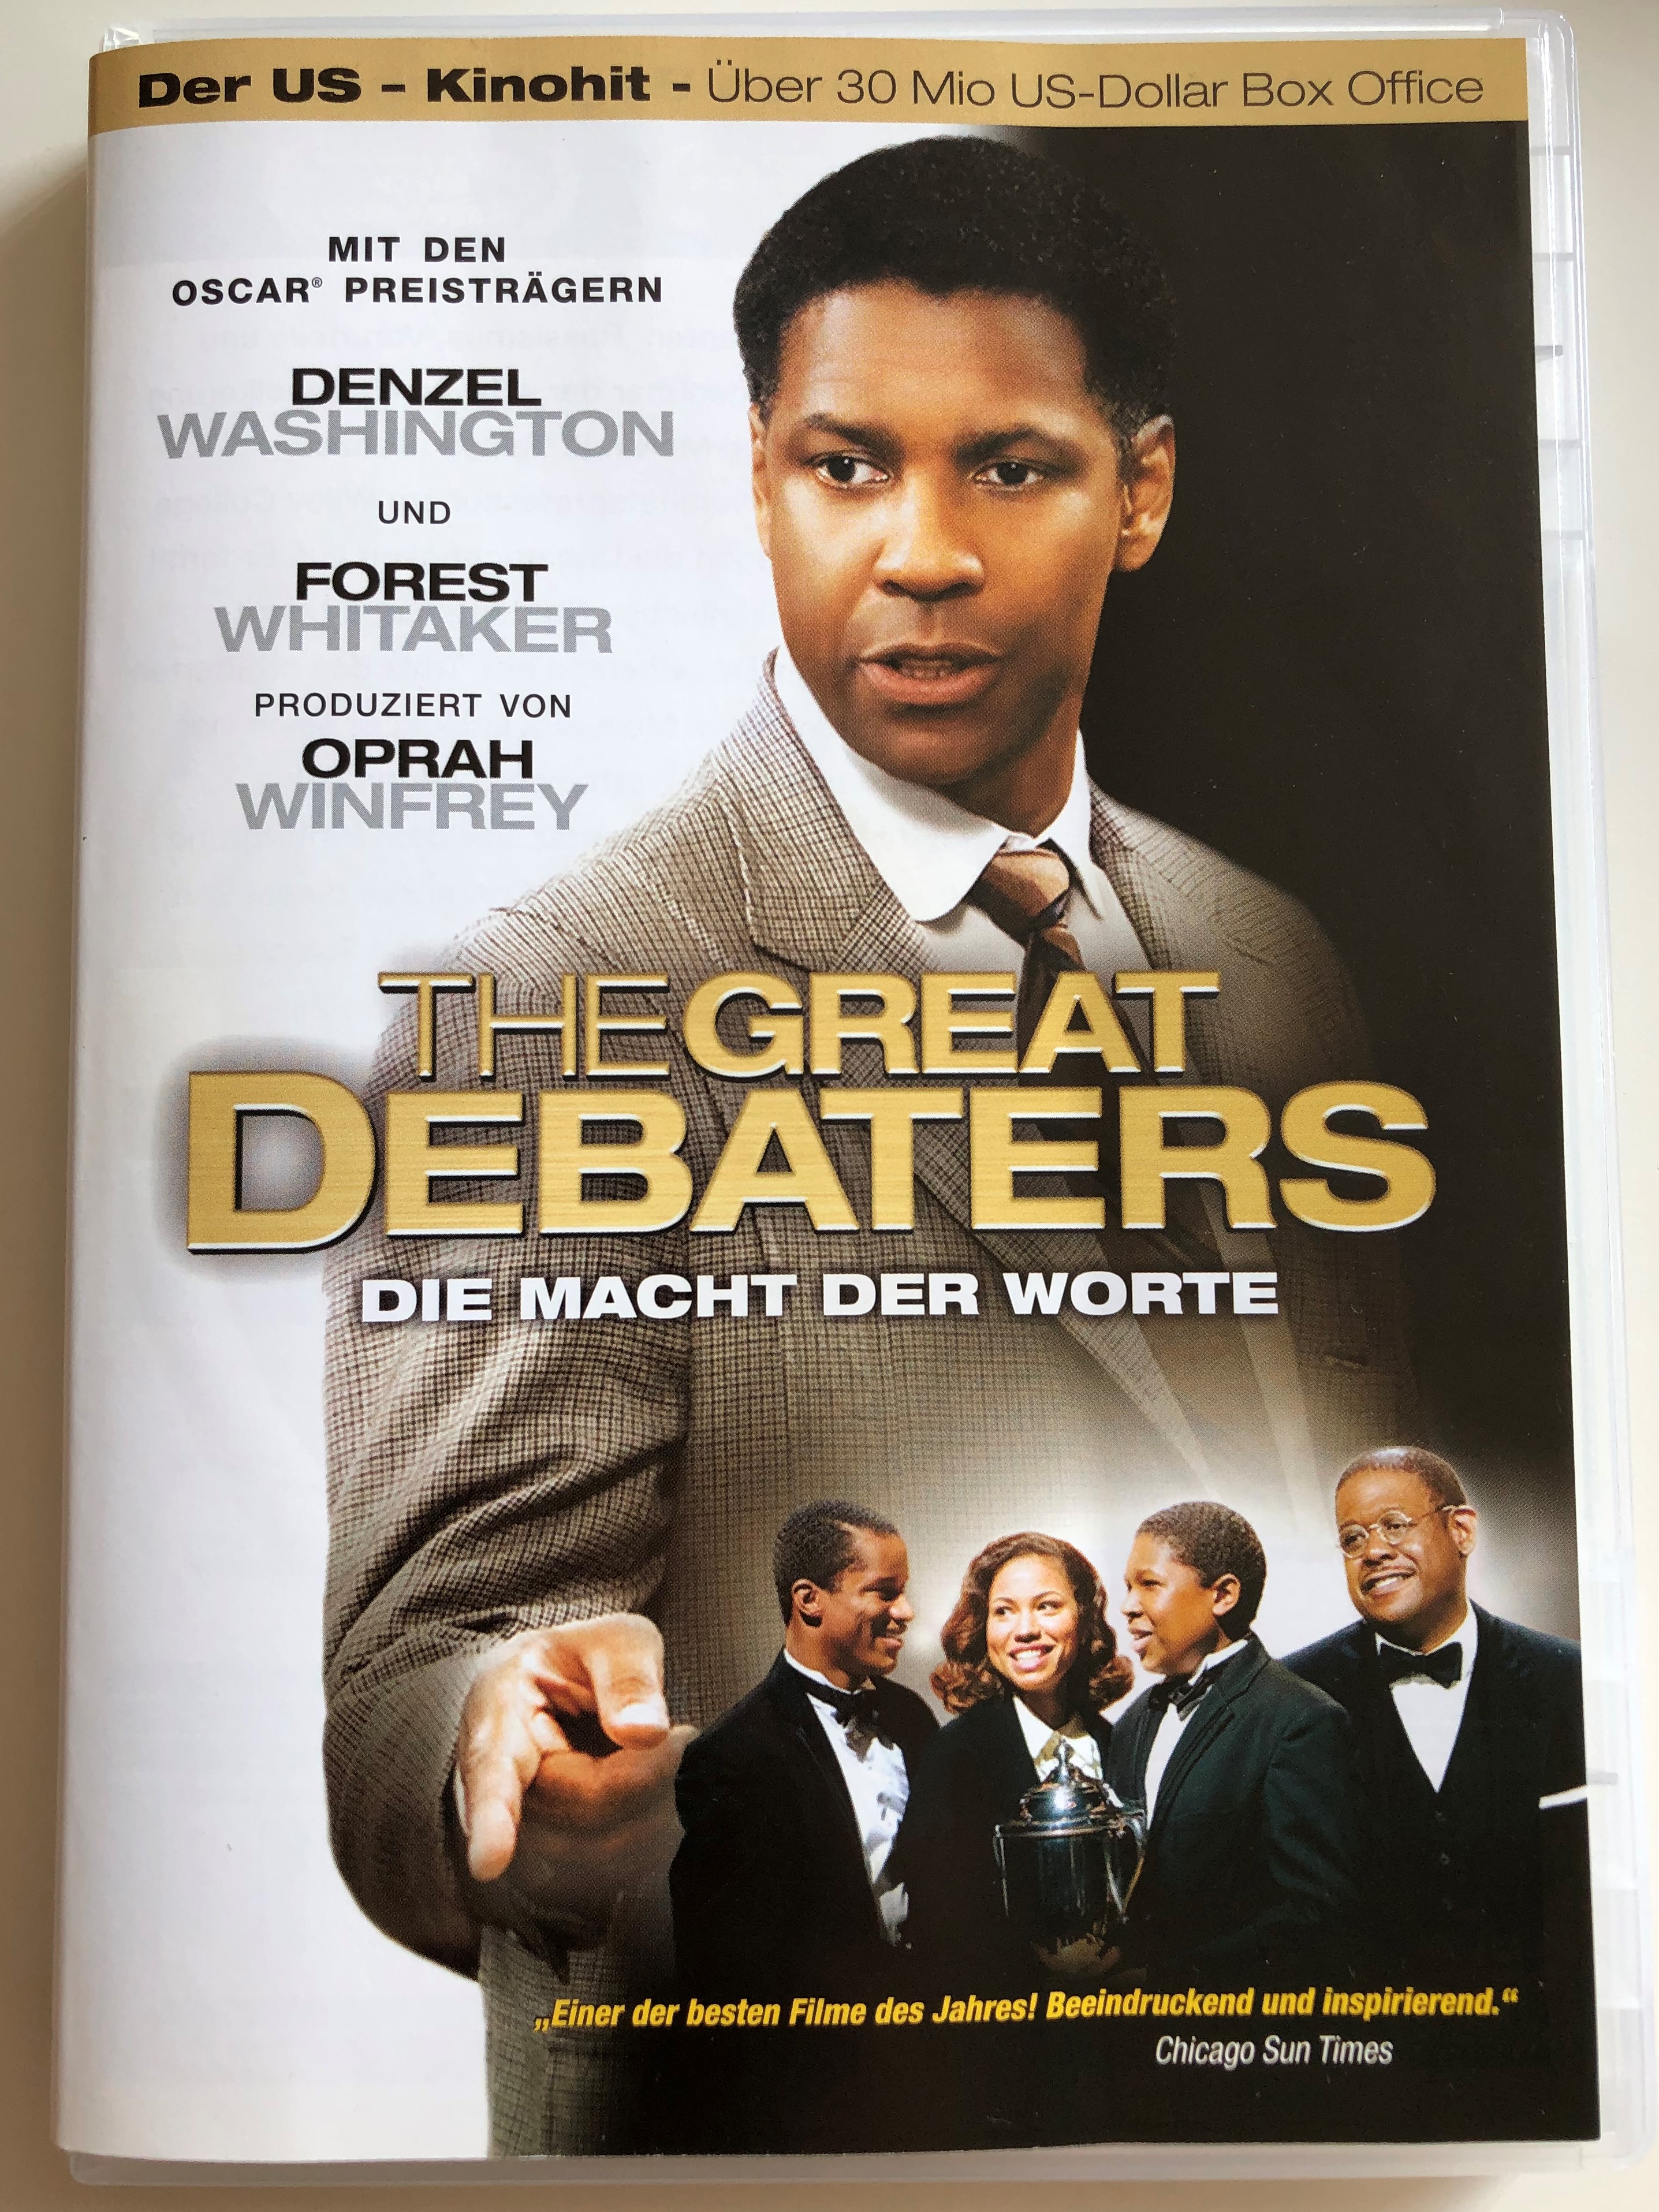 the-great-debaters-dvd-2007-die-macht-der-worte-directed-by-denzel-washington-starring-denzel-washington-forest-whitaker-nate-parker-jurnee-smollett-produced-by-oprah-winfrey-1-.jpg